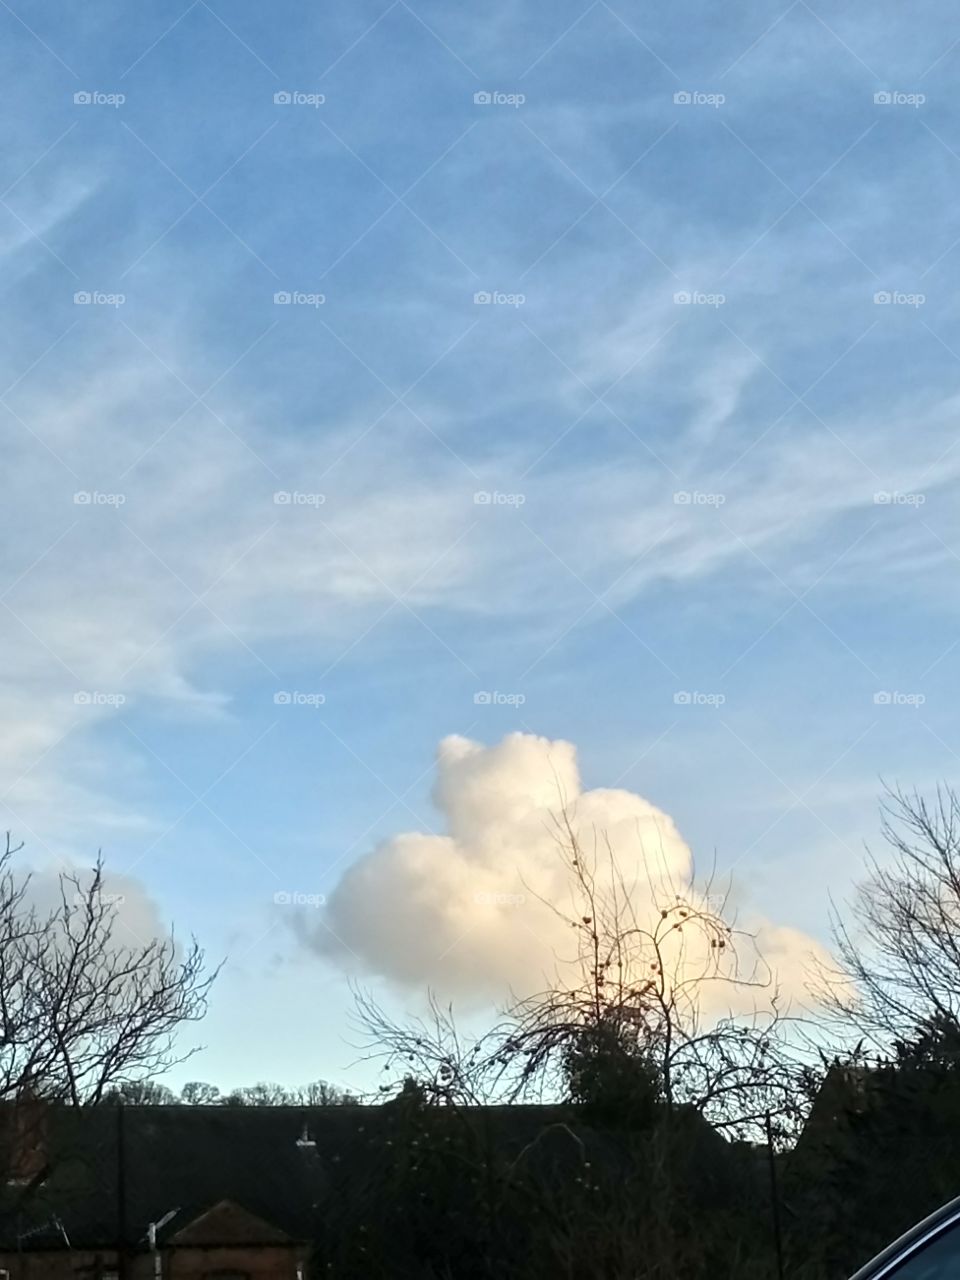 Floofy cloud